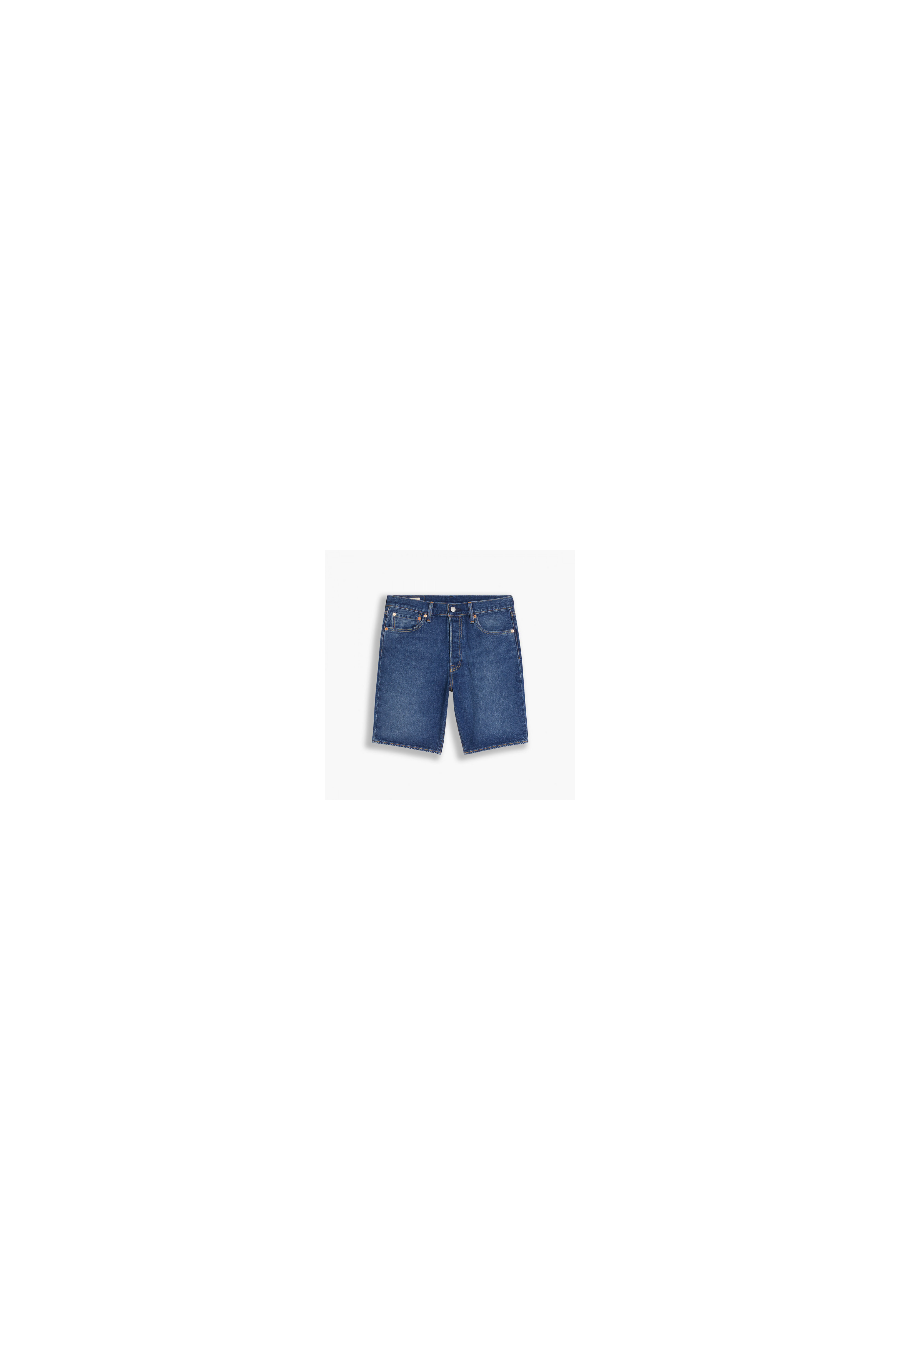 Pantalón corto Levi's 501 - 36512-0152